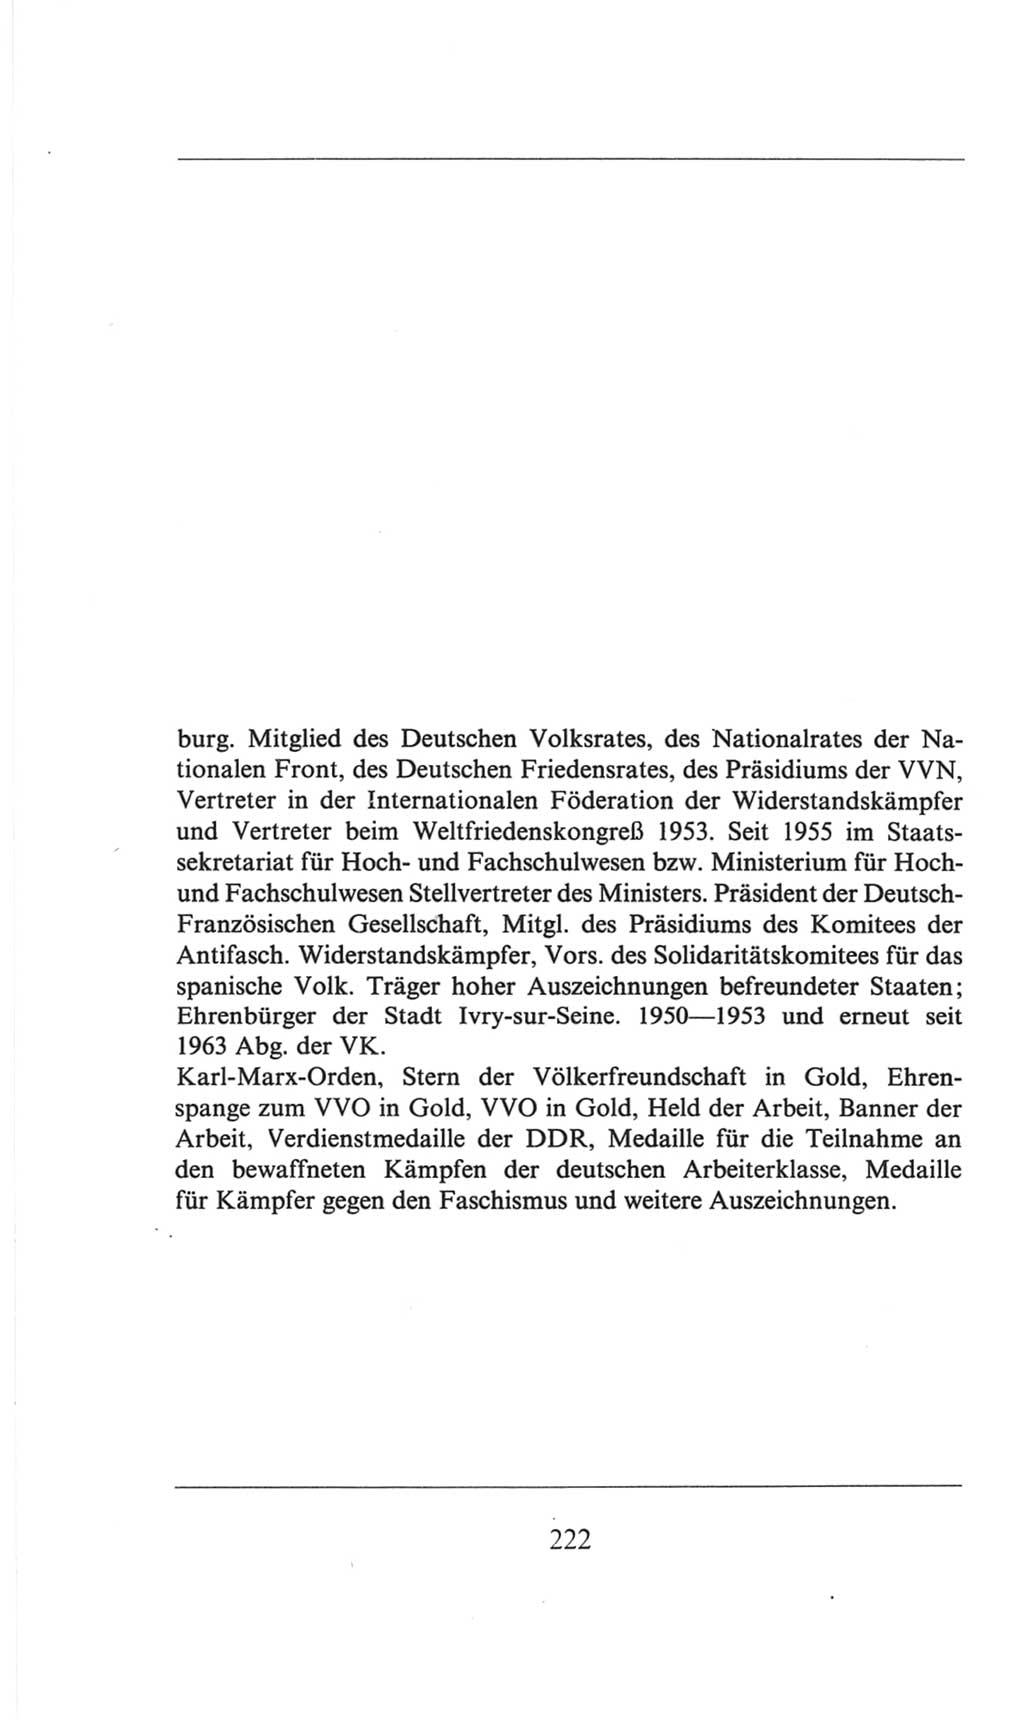 Volkskammer (VK) der Deutschen Demokratischen Republik (DDR), 6. Wahlperiode 1971-1976, Seite 222 (VK. DDR 6. WP. 1971-1976, S. 222)